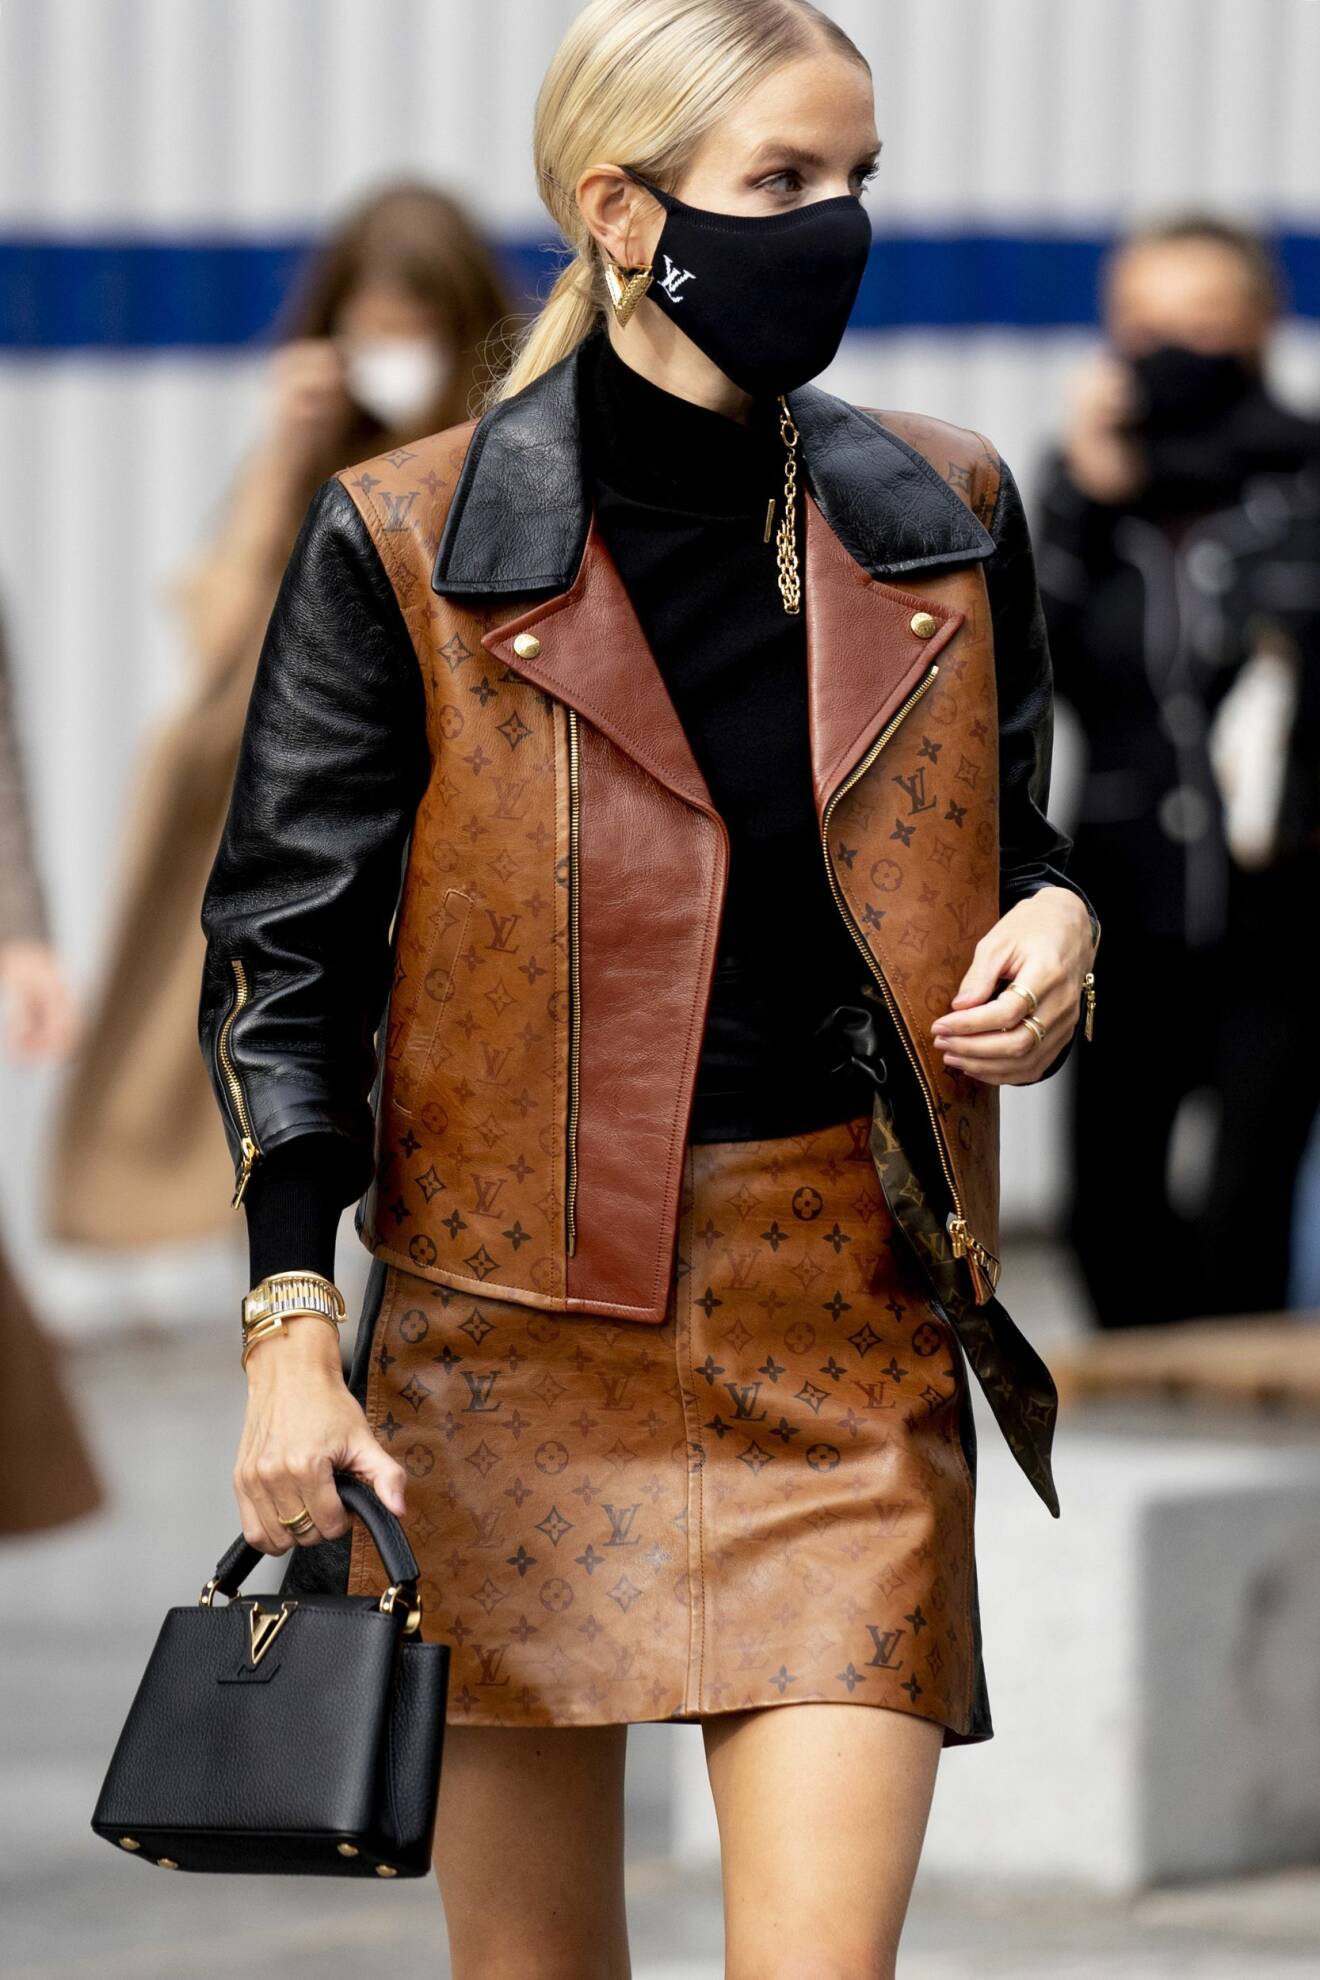 Leonie Hanne i en brun läderväst med matchande läderkjol